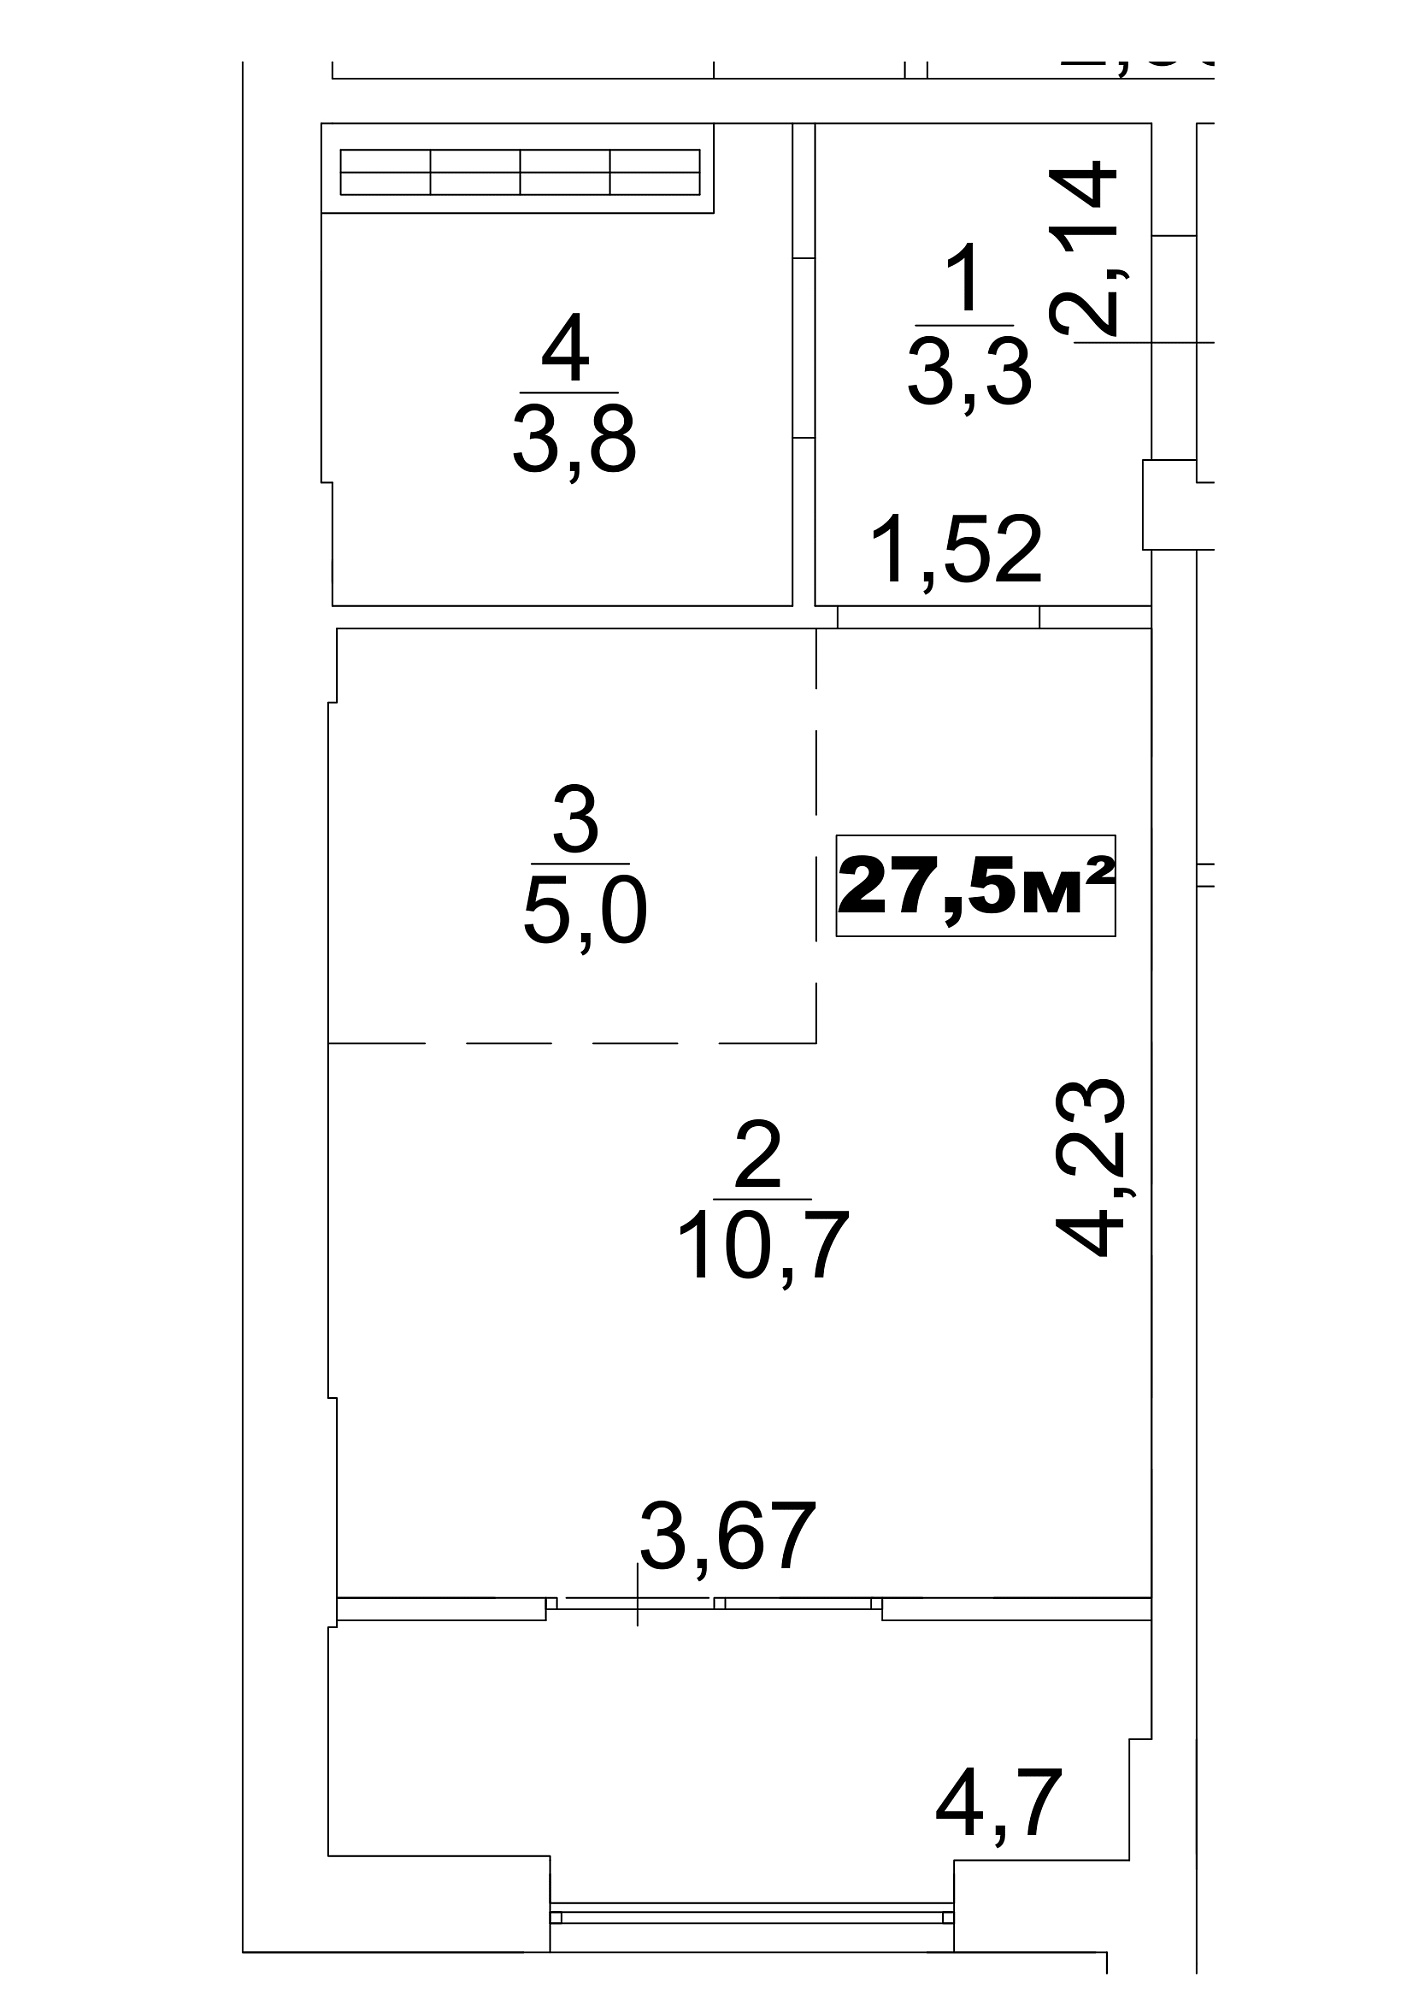 Планування Smart-квартира площею 27.5м2, AB-13-06/0045а.